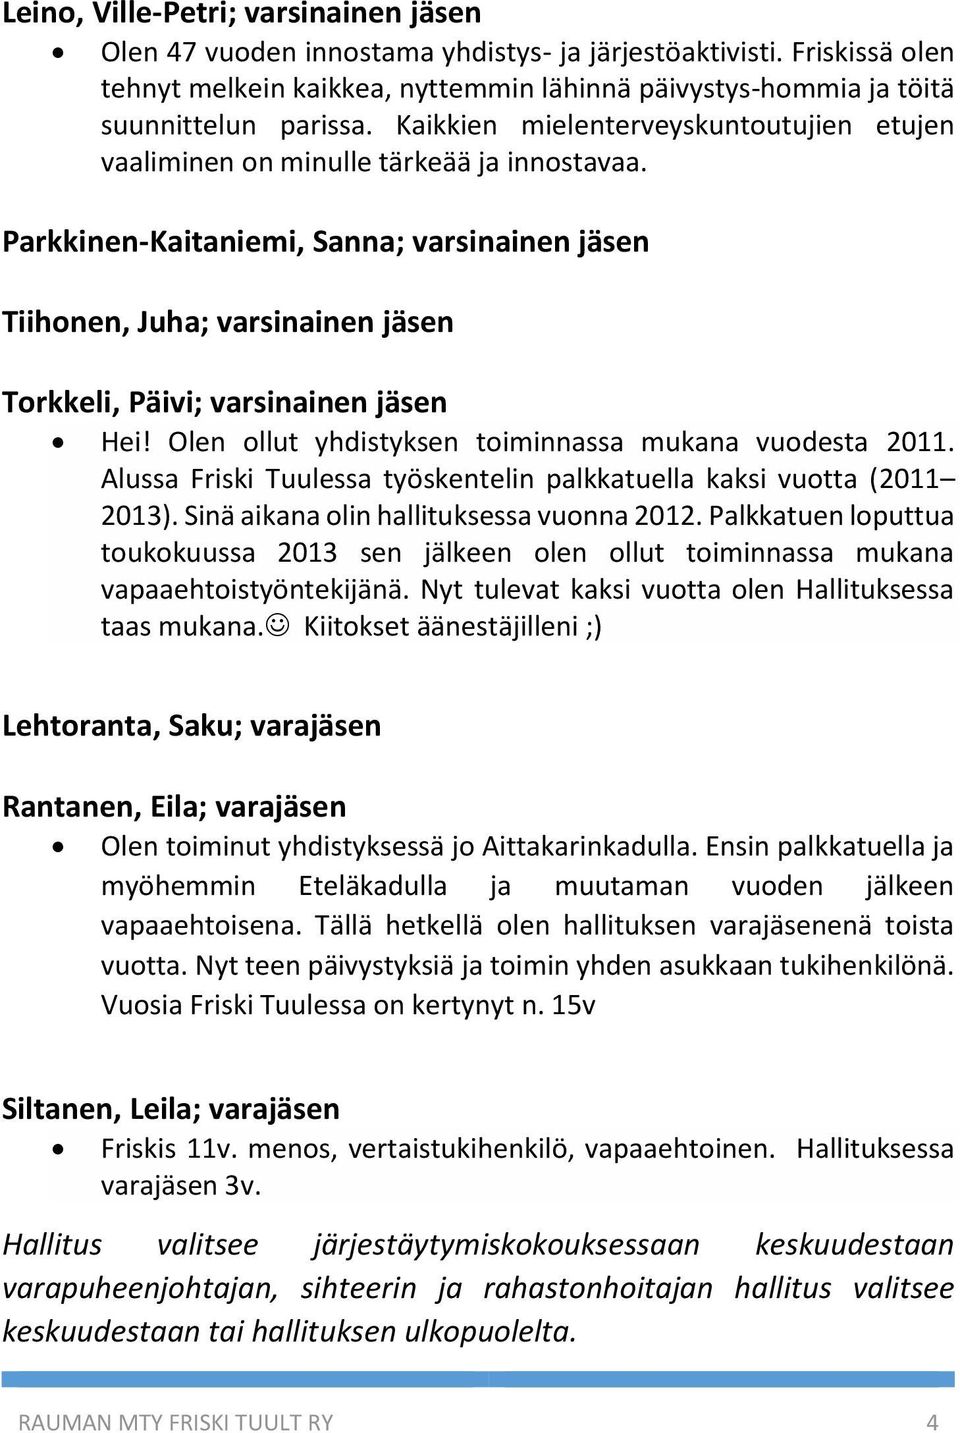 Parkkinen-Kaitaniemi, Sanna; varsinainen jäsen Tiihonen, Juha; varsinainen jäsen Torkkeli, Päivi; varsinainen jäsen Hei! Olen ollut yhdistyksen toiminnassa mukana vuodesta 2011.